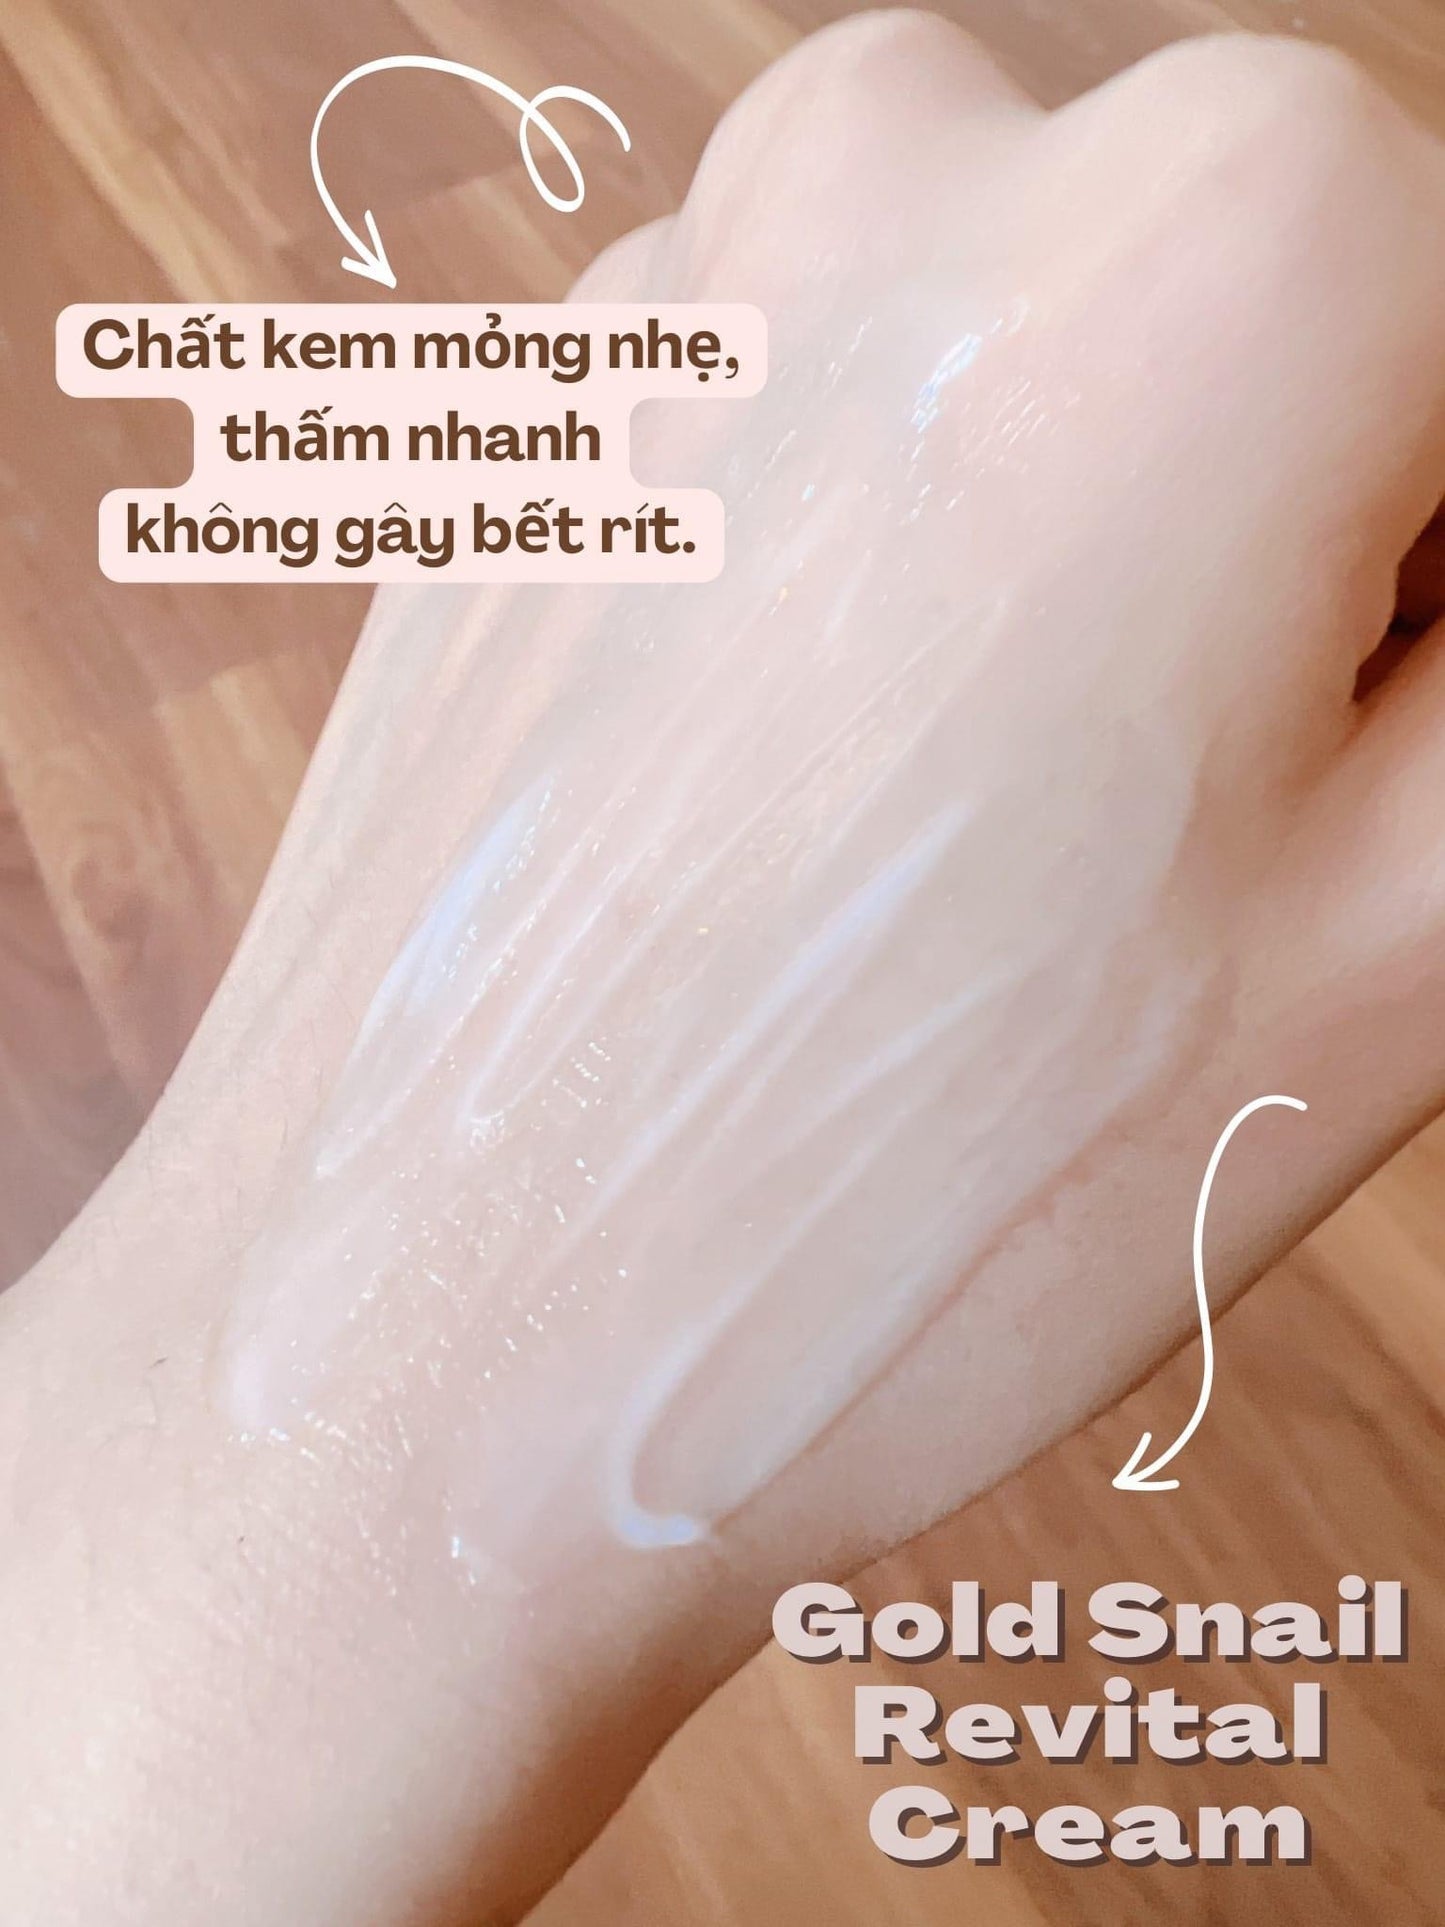 Kem oc sen BNY gold snail revital cream